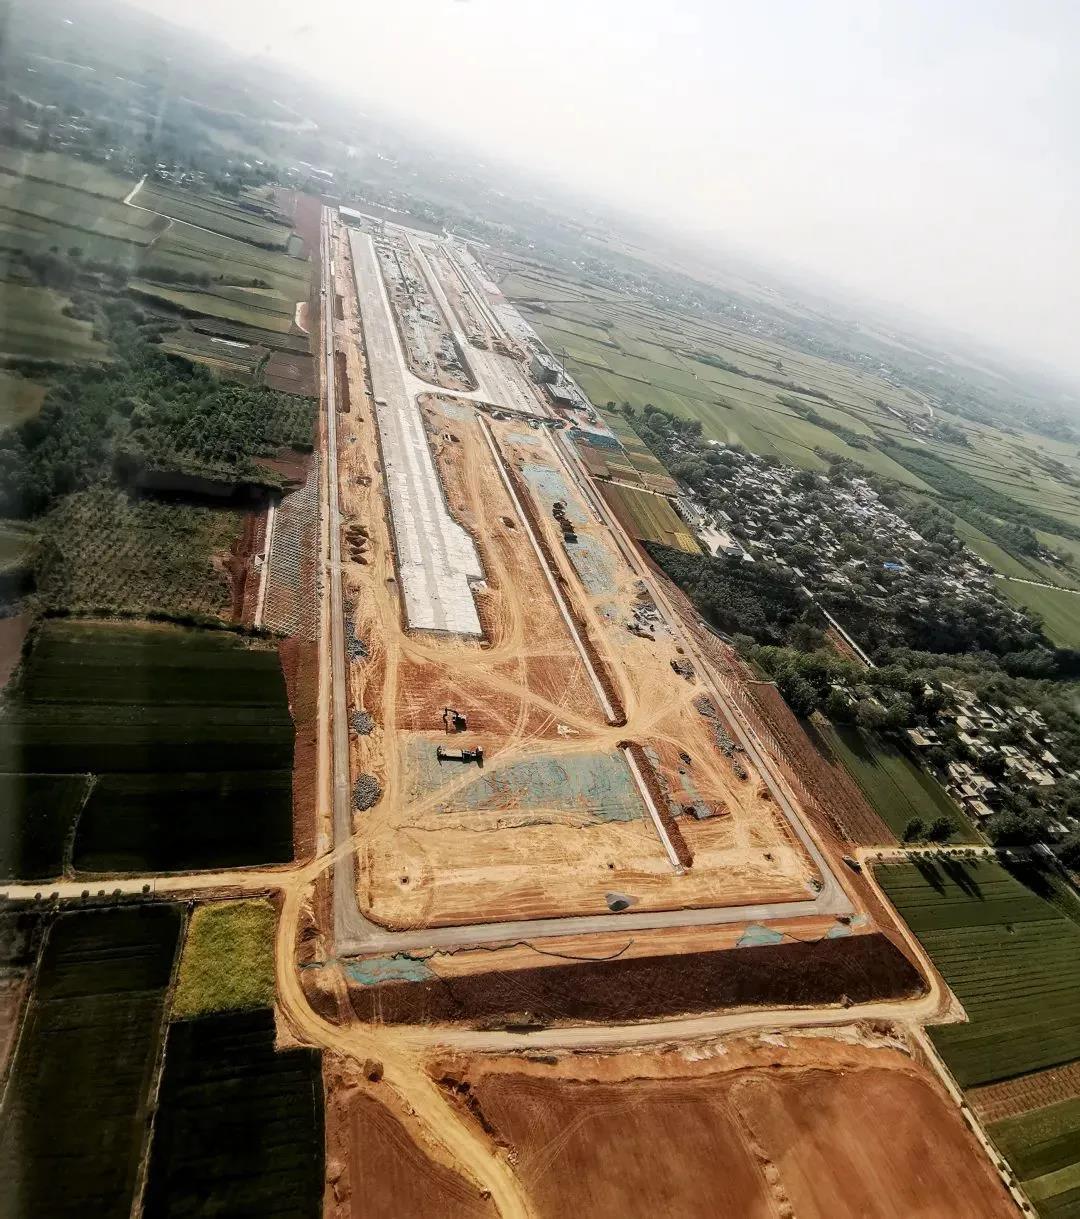 洛阳龙门通用机场建设稳步推进,6月底具备试飞条件